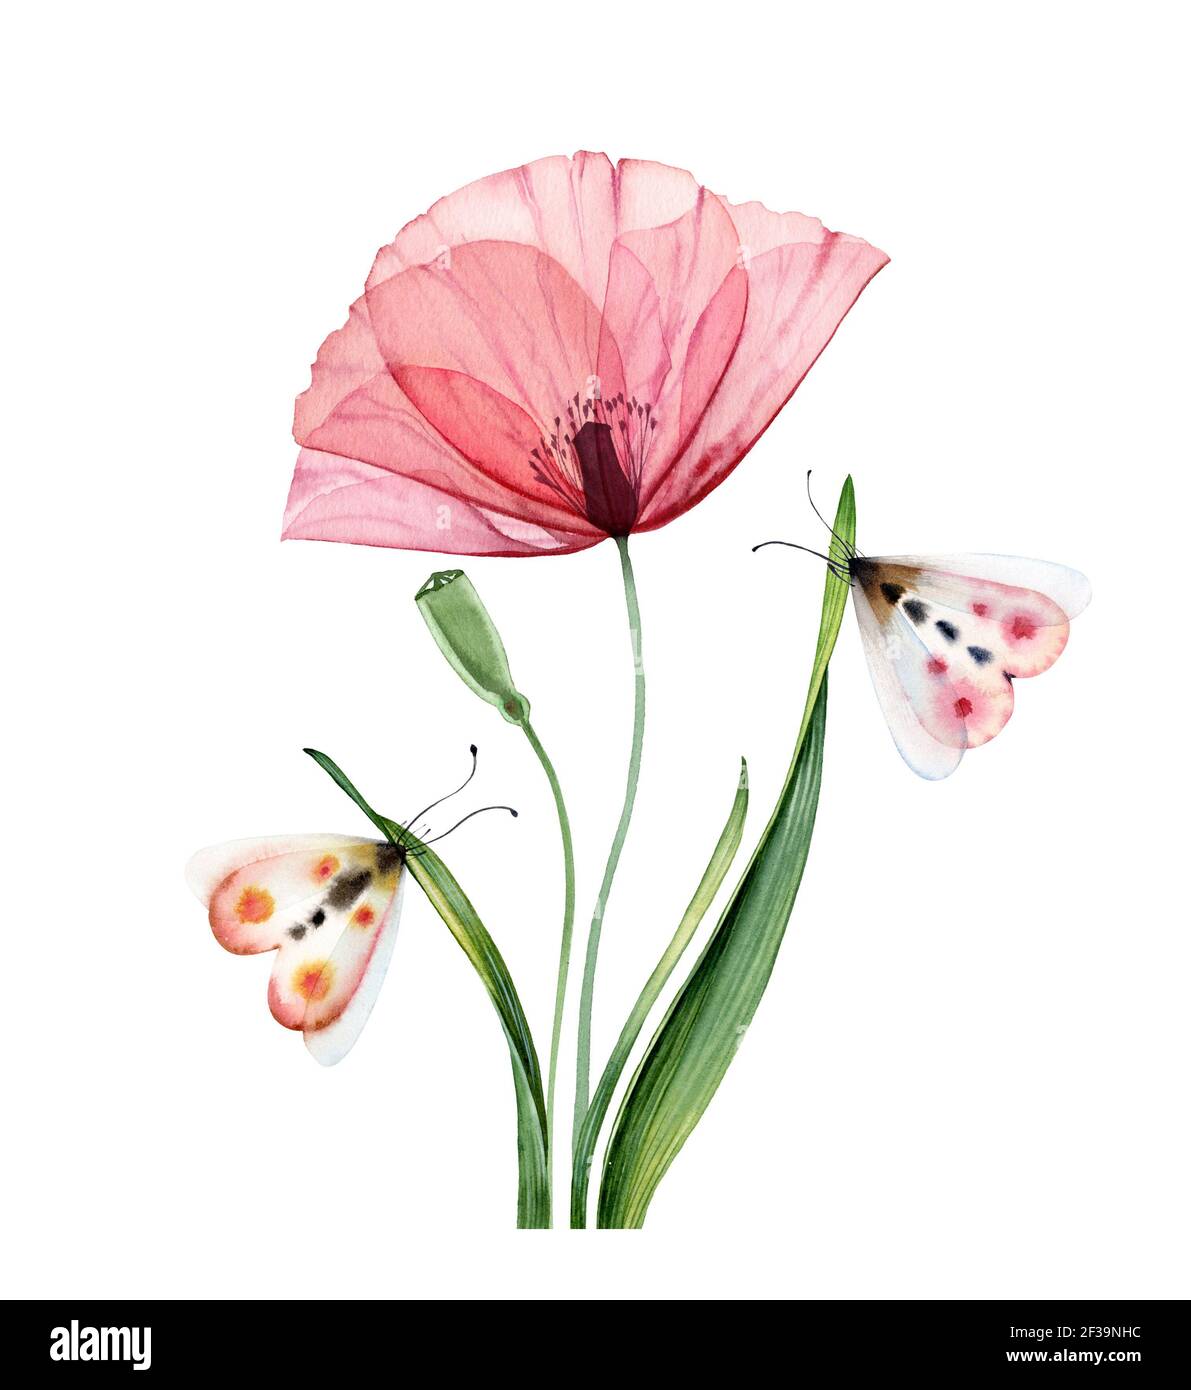 Plante de pavot d'aquarelle. Grande fleur rose transparente avec des laves et des papillons. Illustration abstraite peinte à la main. Illustration botanique colorée Banque D'Images